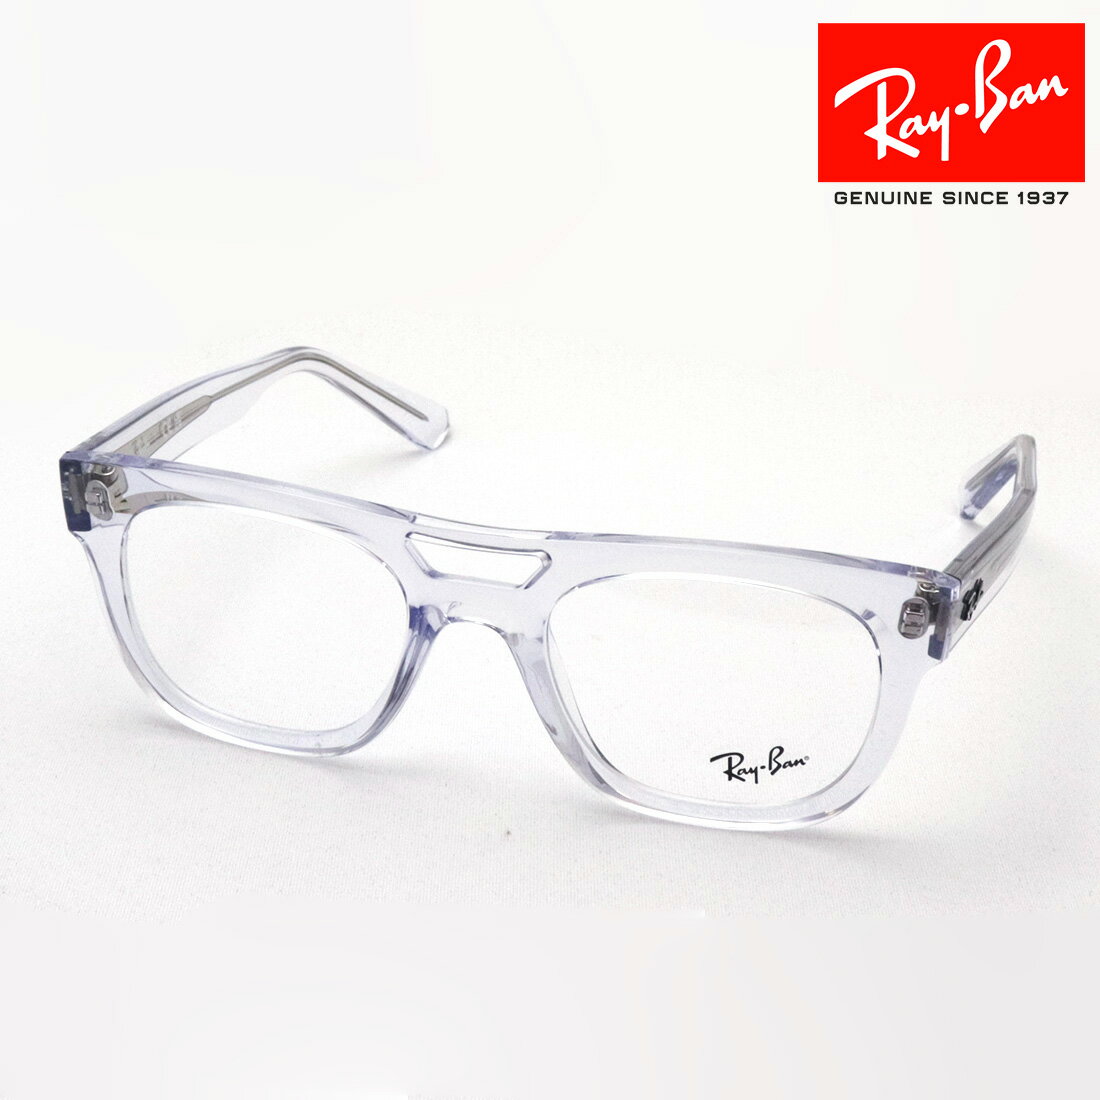 レイバン メガネ メンズ NewModel 正規レイバン日本最大級の品揃え レイバン メガネ フレーム PHIL フィル Ray-Ban RX7226 8321 伊達メガネ 度付き ブルーライト カット 眼鏡 サスティナブル RayBan スクエア クリア系